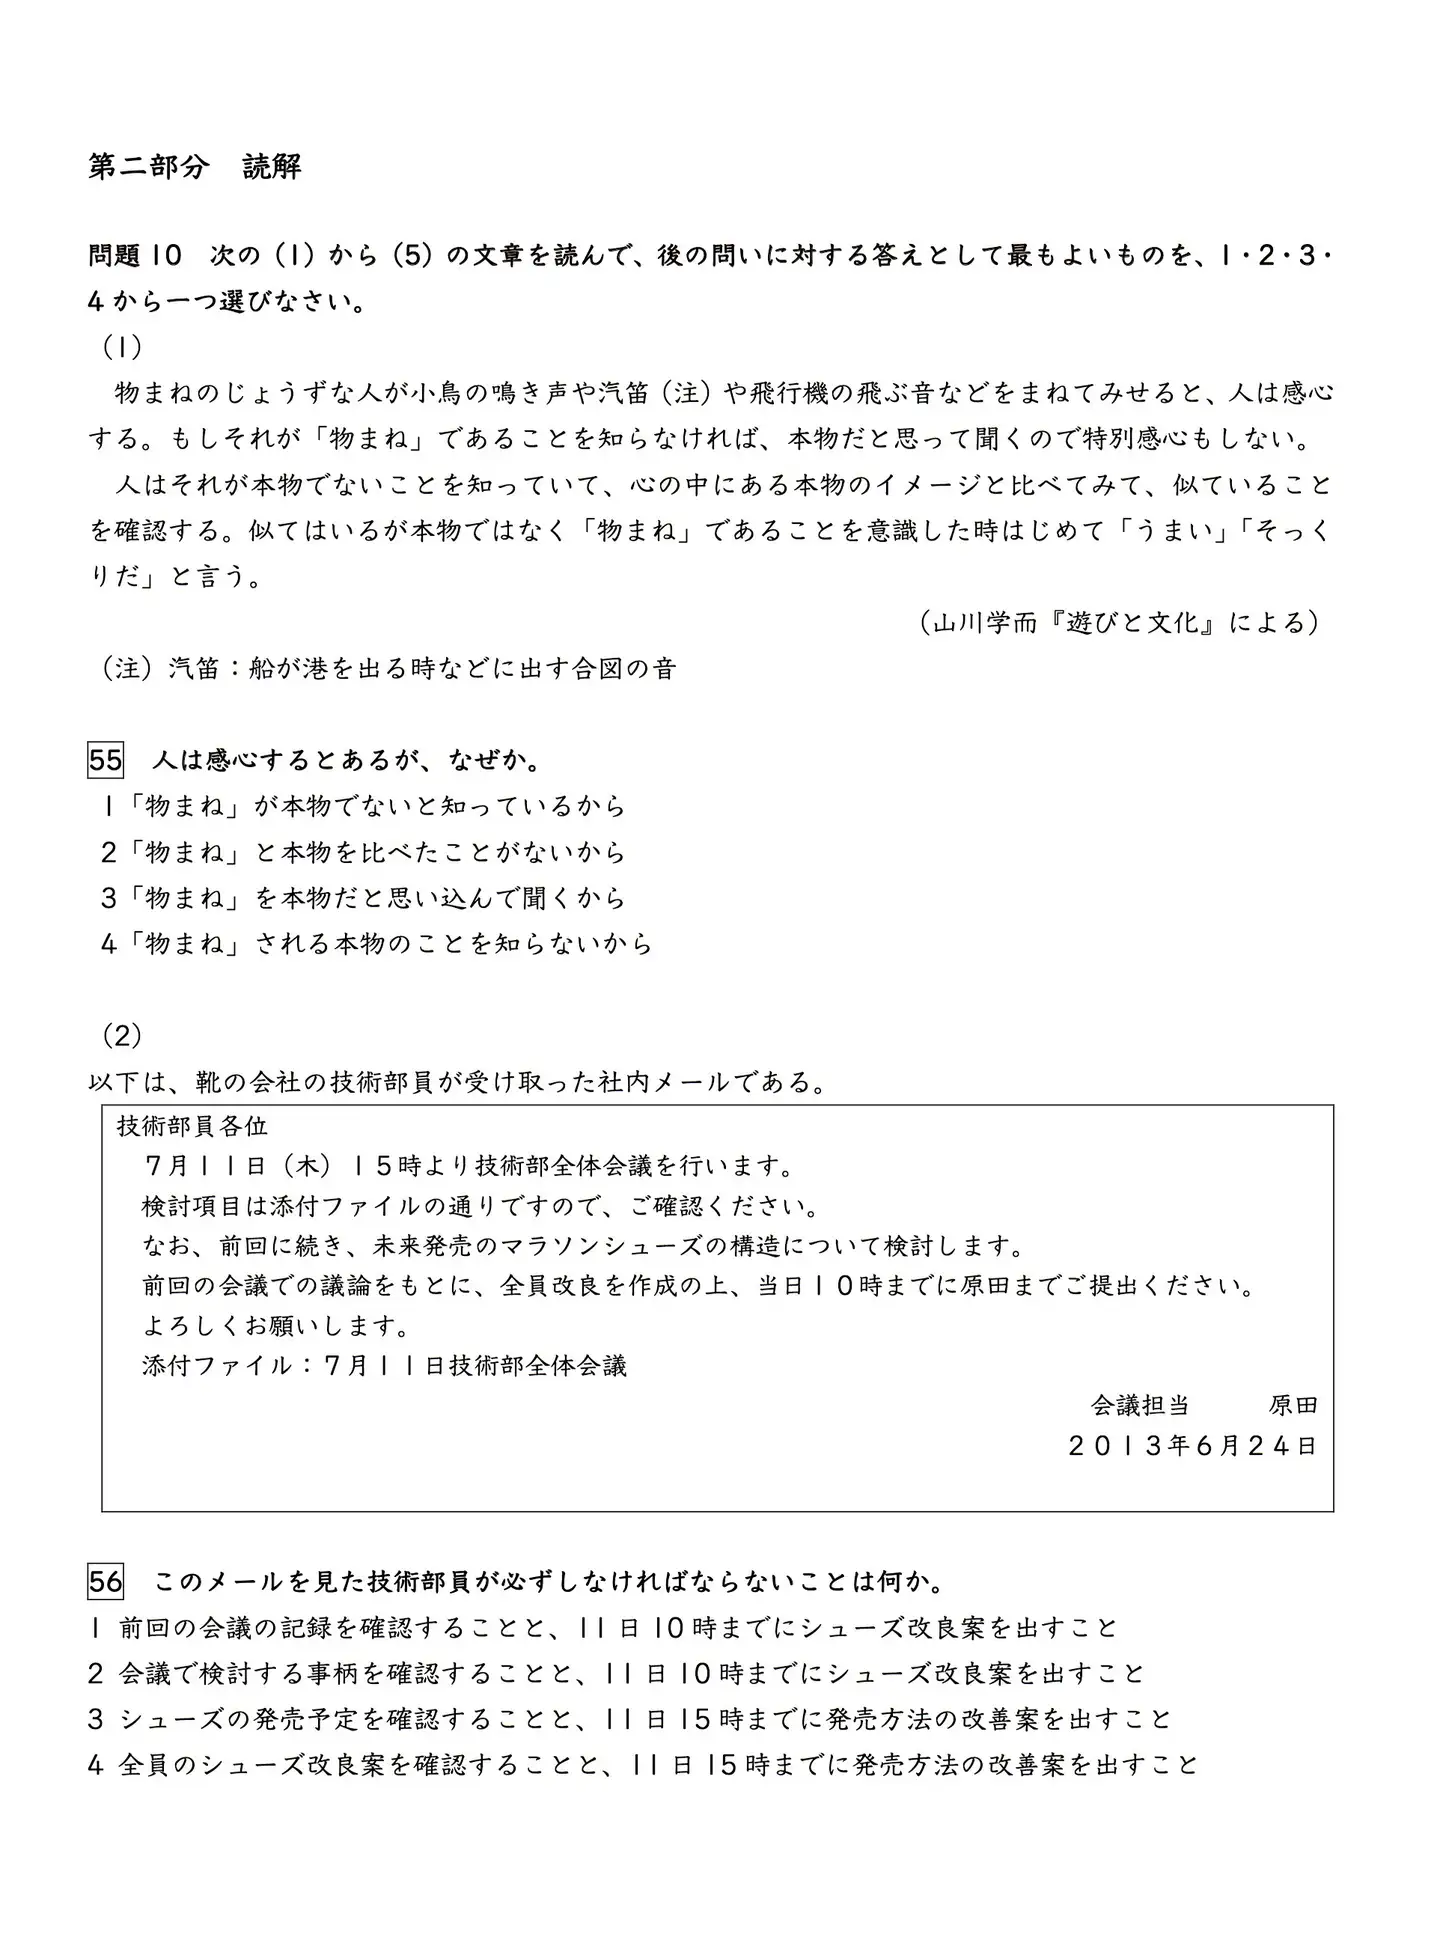 限时 日语能力考试n2 N1历年真题下载 知乎